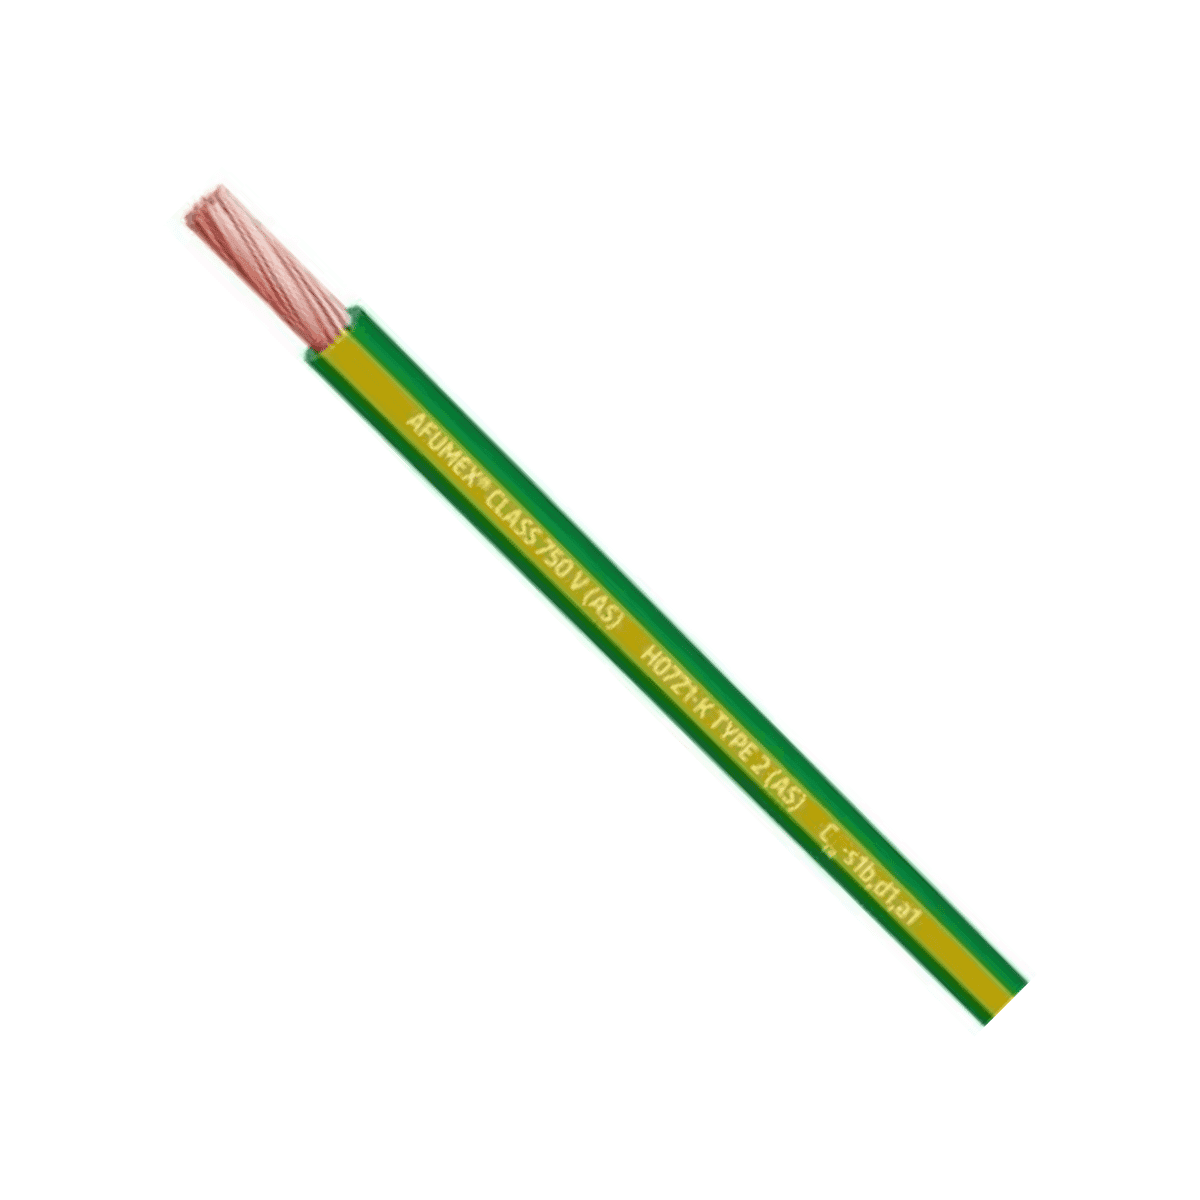 Cable Afumex H07Z1-K AS 750 1x2.5mm2 amarillo-verde - Caja de 200 metros con referencia 20193983 de la marca PRYSMIAN